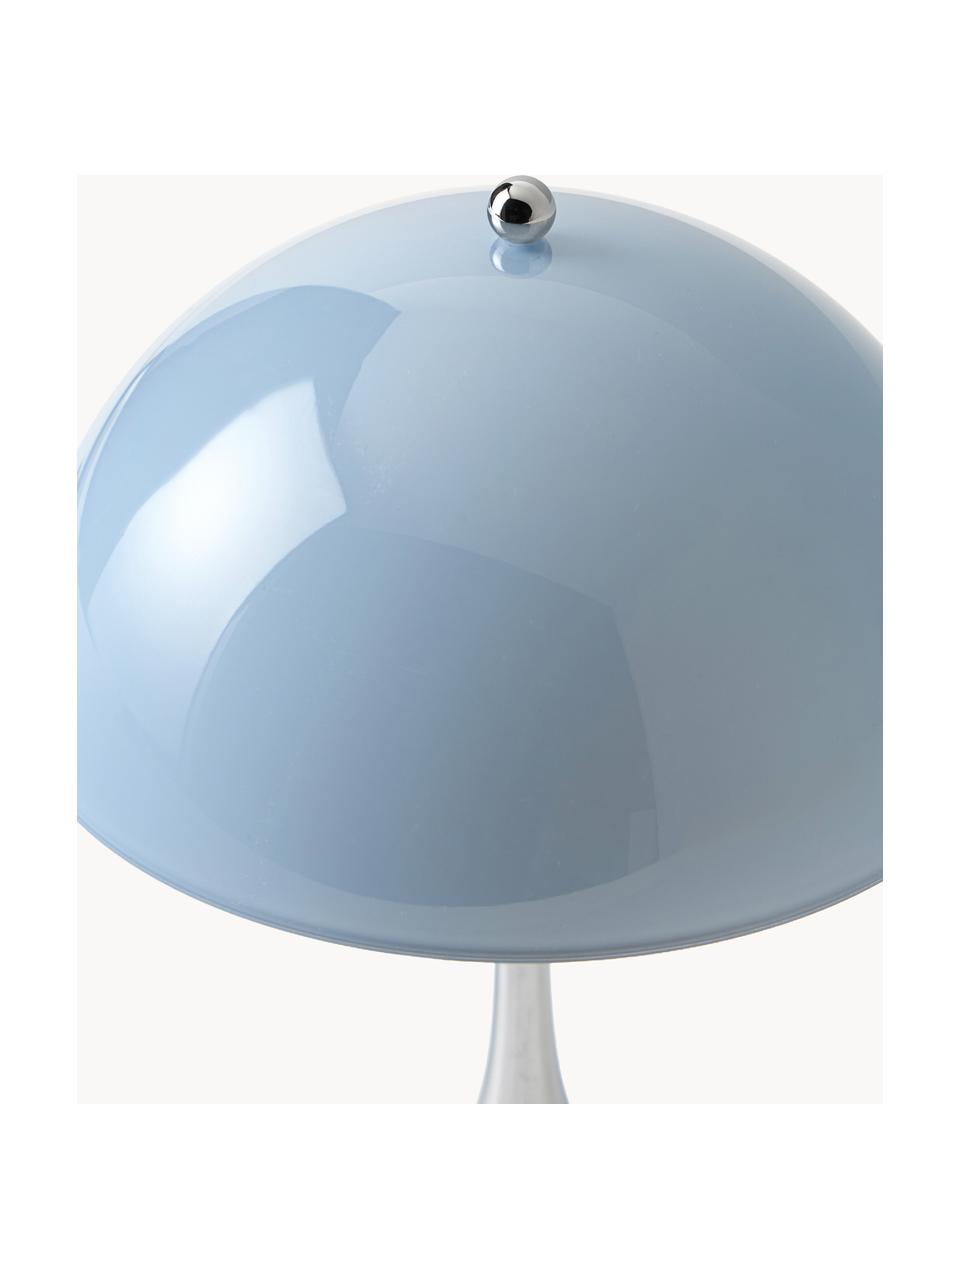 Lampada da tavolo portatile a LED con luce regolabile Panthella, alt. 24 cm, Paralume: vetro acrilico, Struttura: alluminio rivestito, Vetro acrilico azzurro, argentato, Ø 16 x Alt. 24 cm